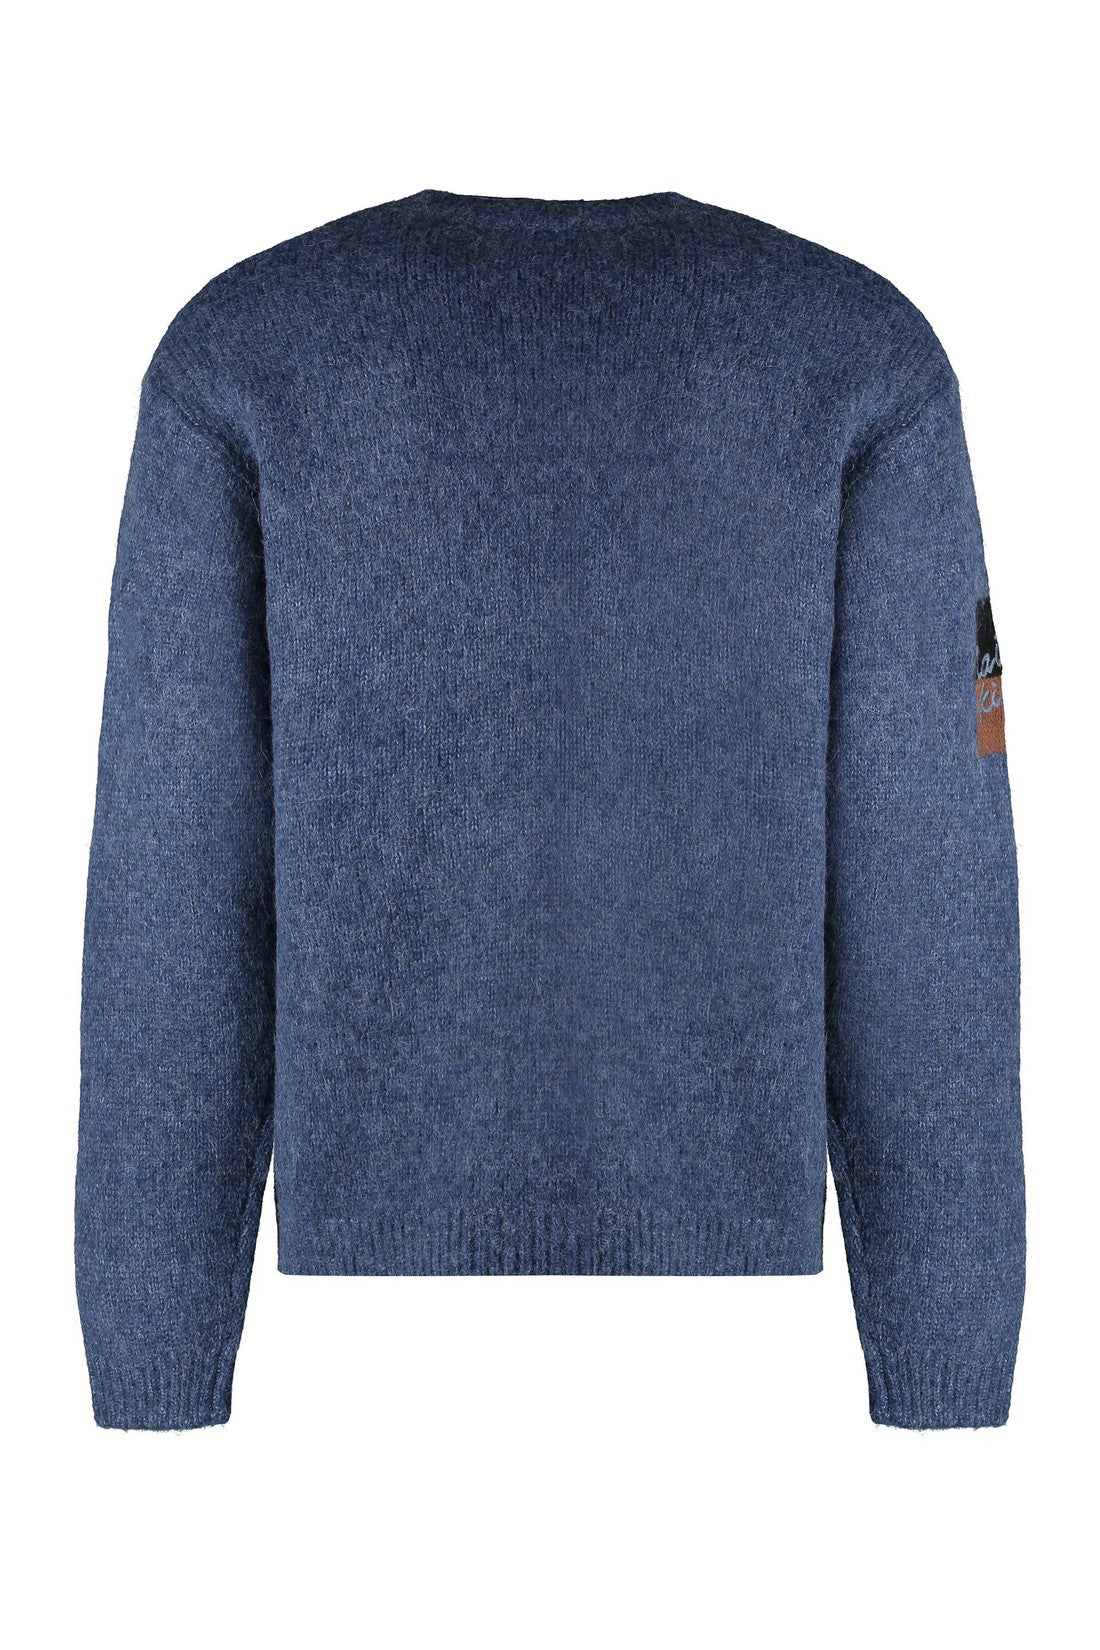 Maison Kitsuné-OUTLET-SALE-Wool-blend crew-neck sweater-ARCHIVIST